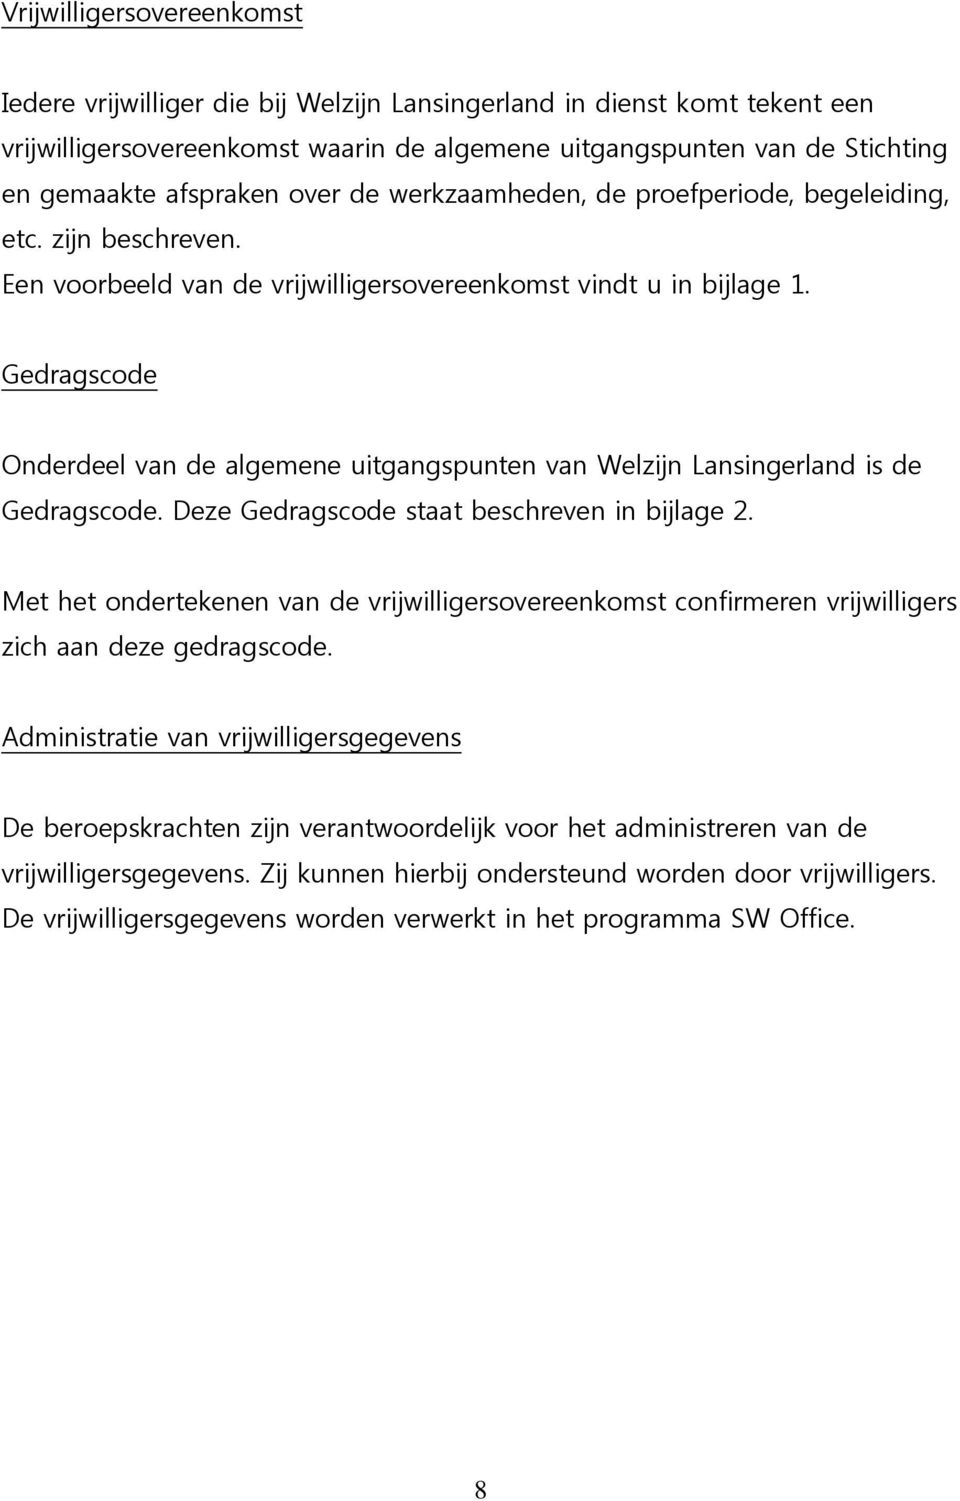 Gedragscode Onderdeel van de algemene uitgangspunten van Welzijn Lansingerland is de Gedragscode. Deze Gedragscode staat beschreven in bijlage 2.